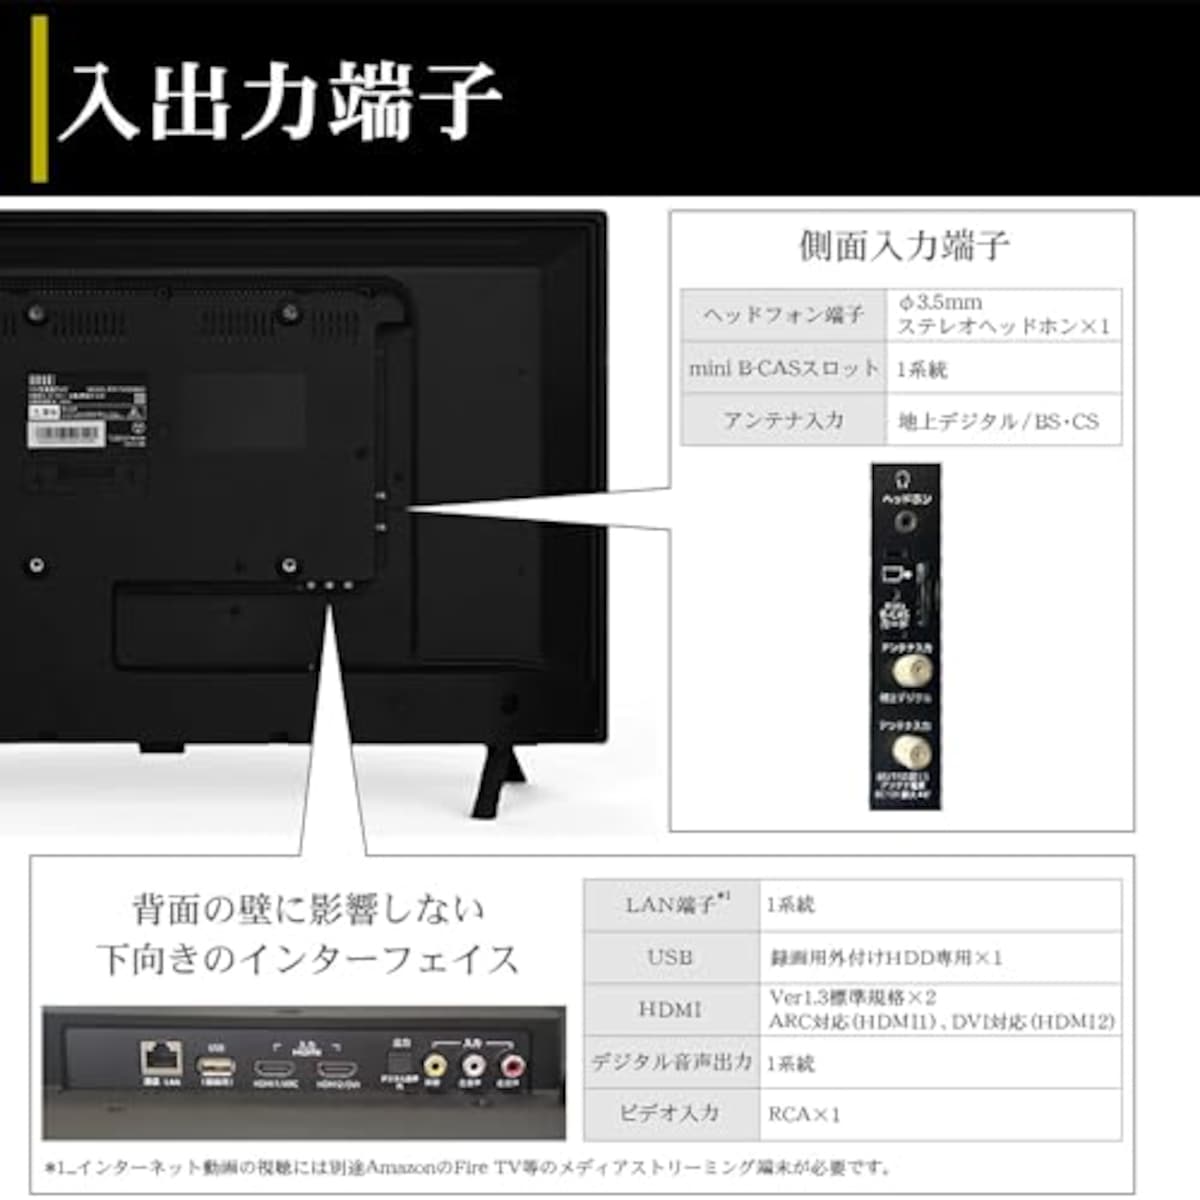  テレビ 32型 ダブルチューナー 裏番組録画 ハイビジョン 東芝ボード内蔵 外付けHDD対応 録画機能 日本メーカー 2022年モデル 壁掛けにも対応 irie アイリー FFF-TV32WBK2画像6 